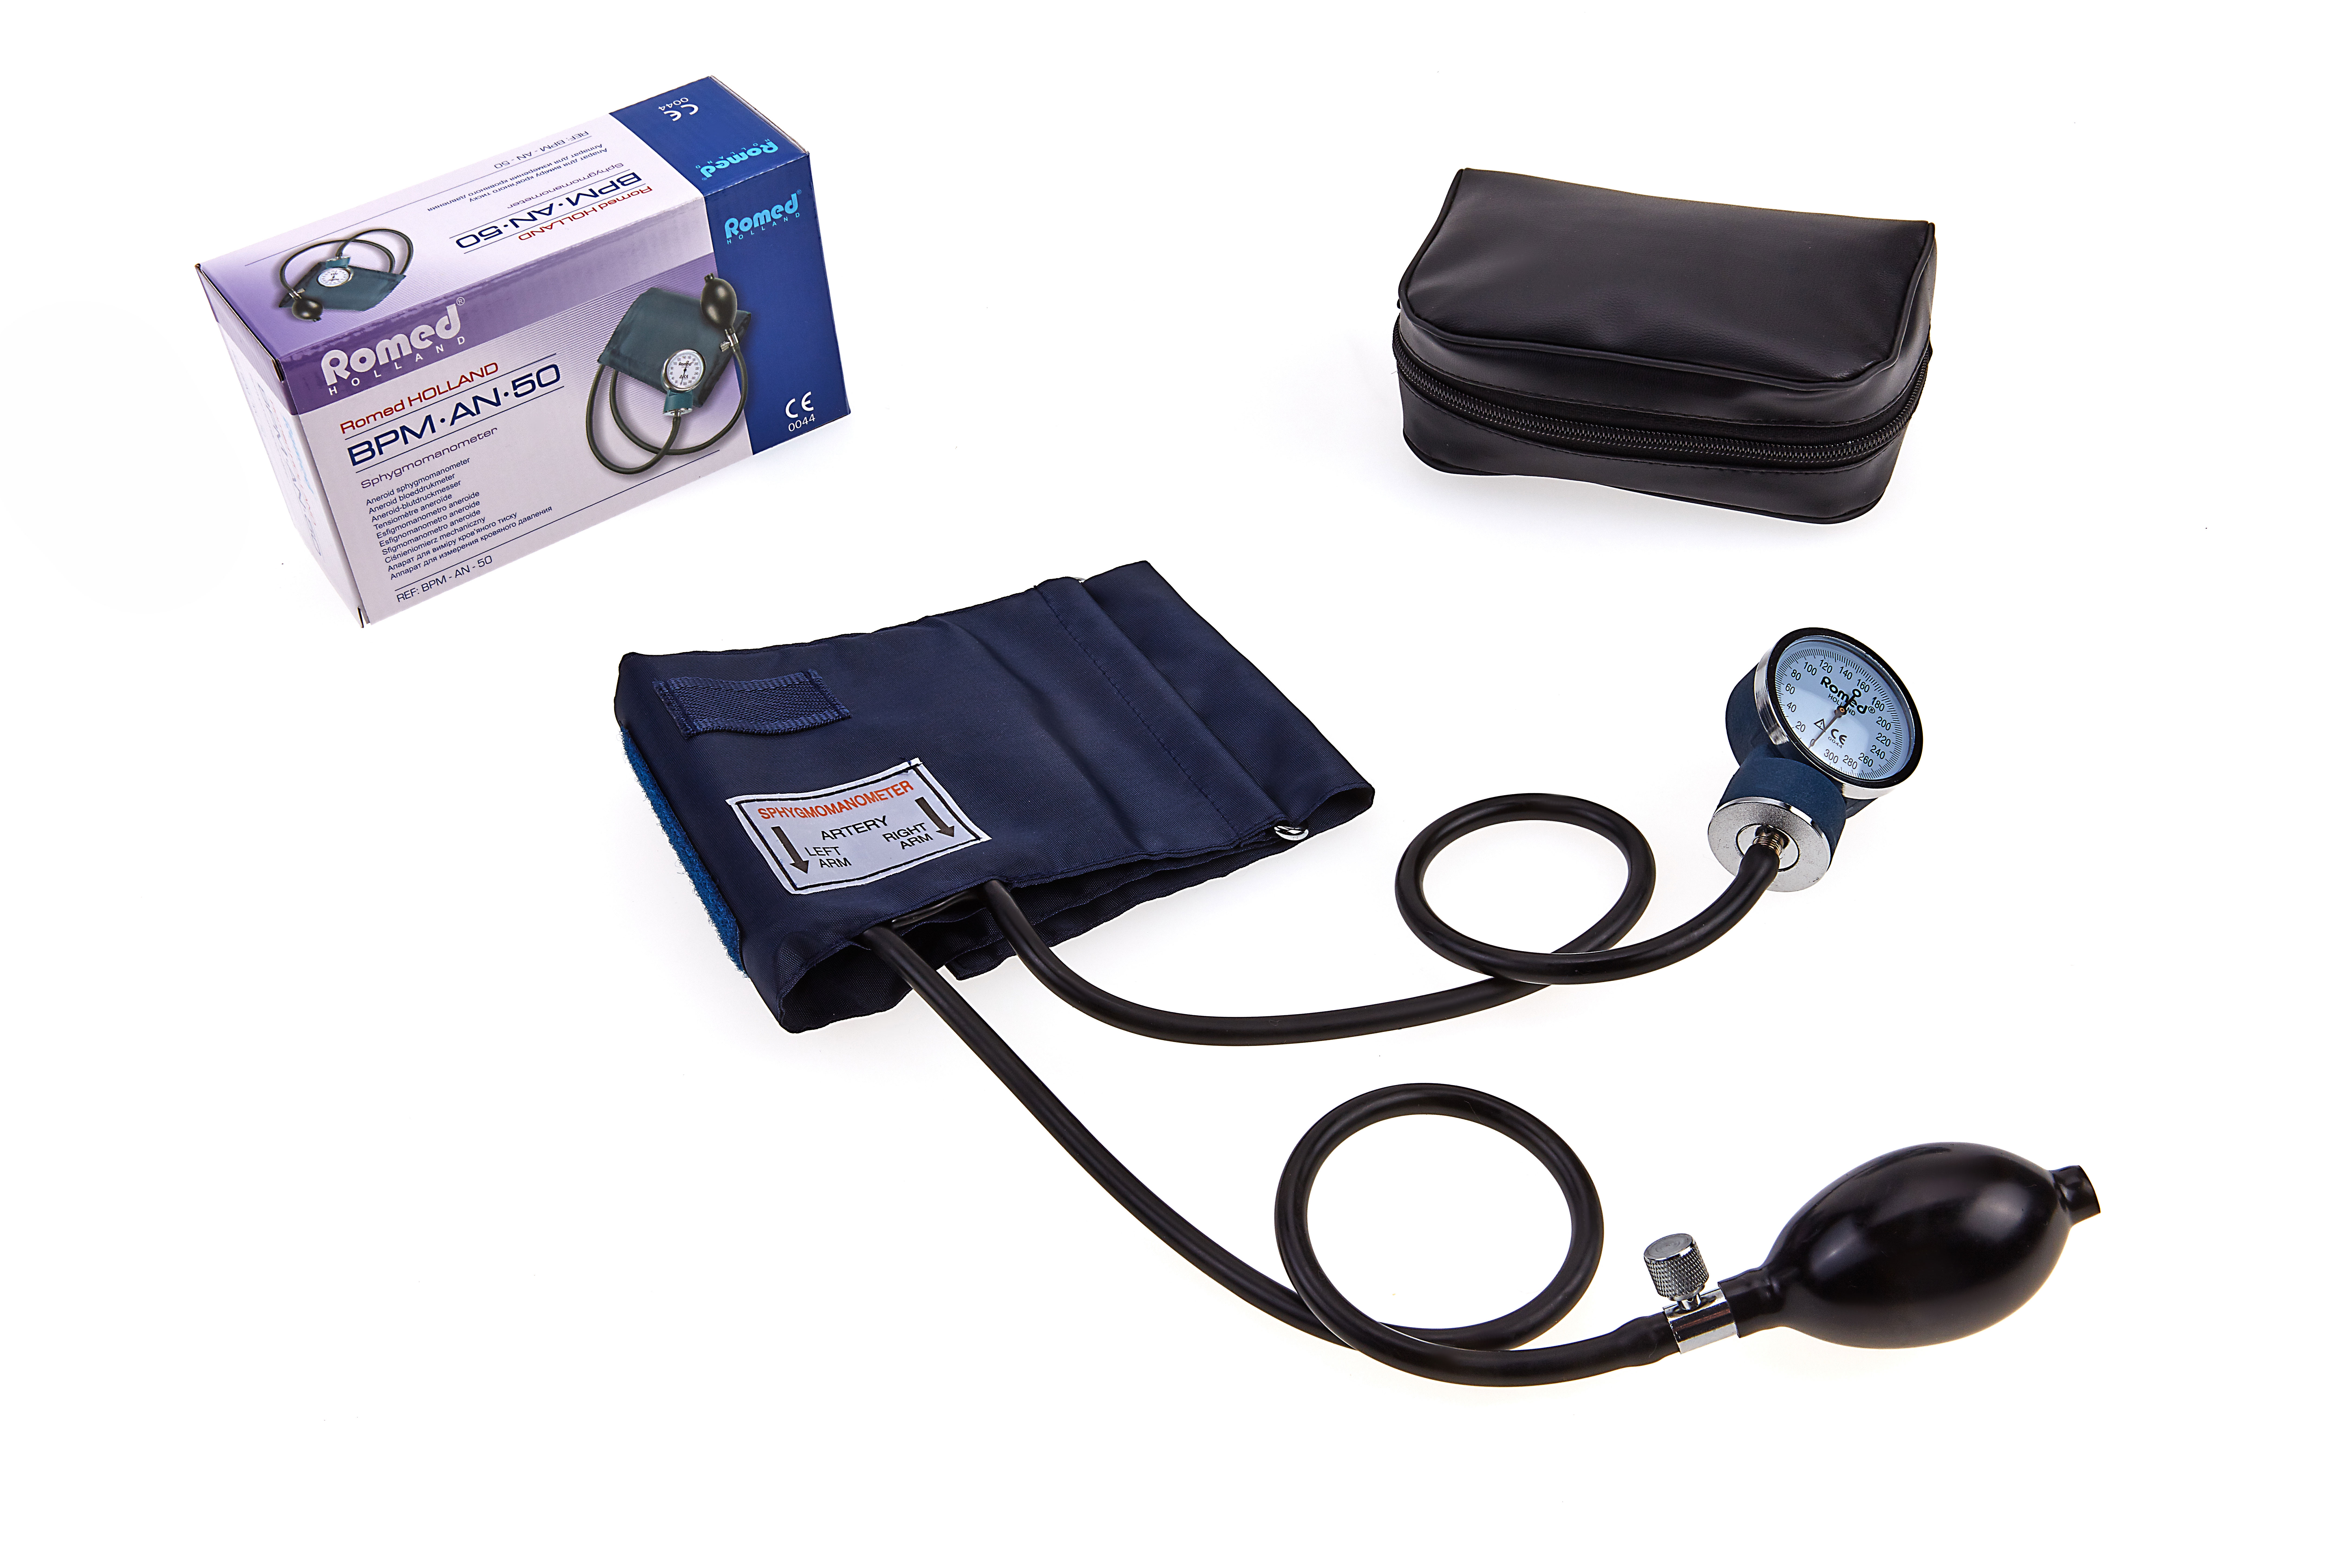 BPM-AN-50 Romed bloeddrukmeters, aneroid, per stuk in een binnendoosje, 50 stuks in een karton.